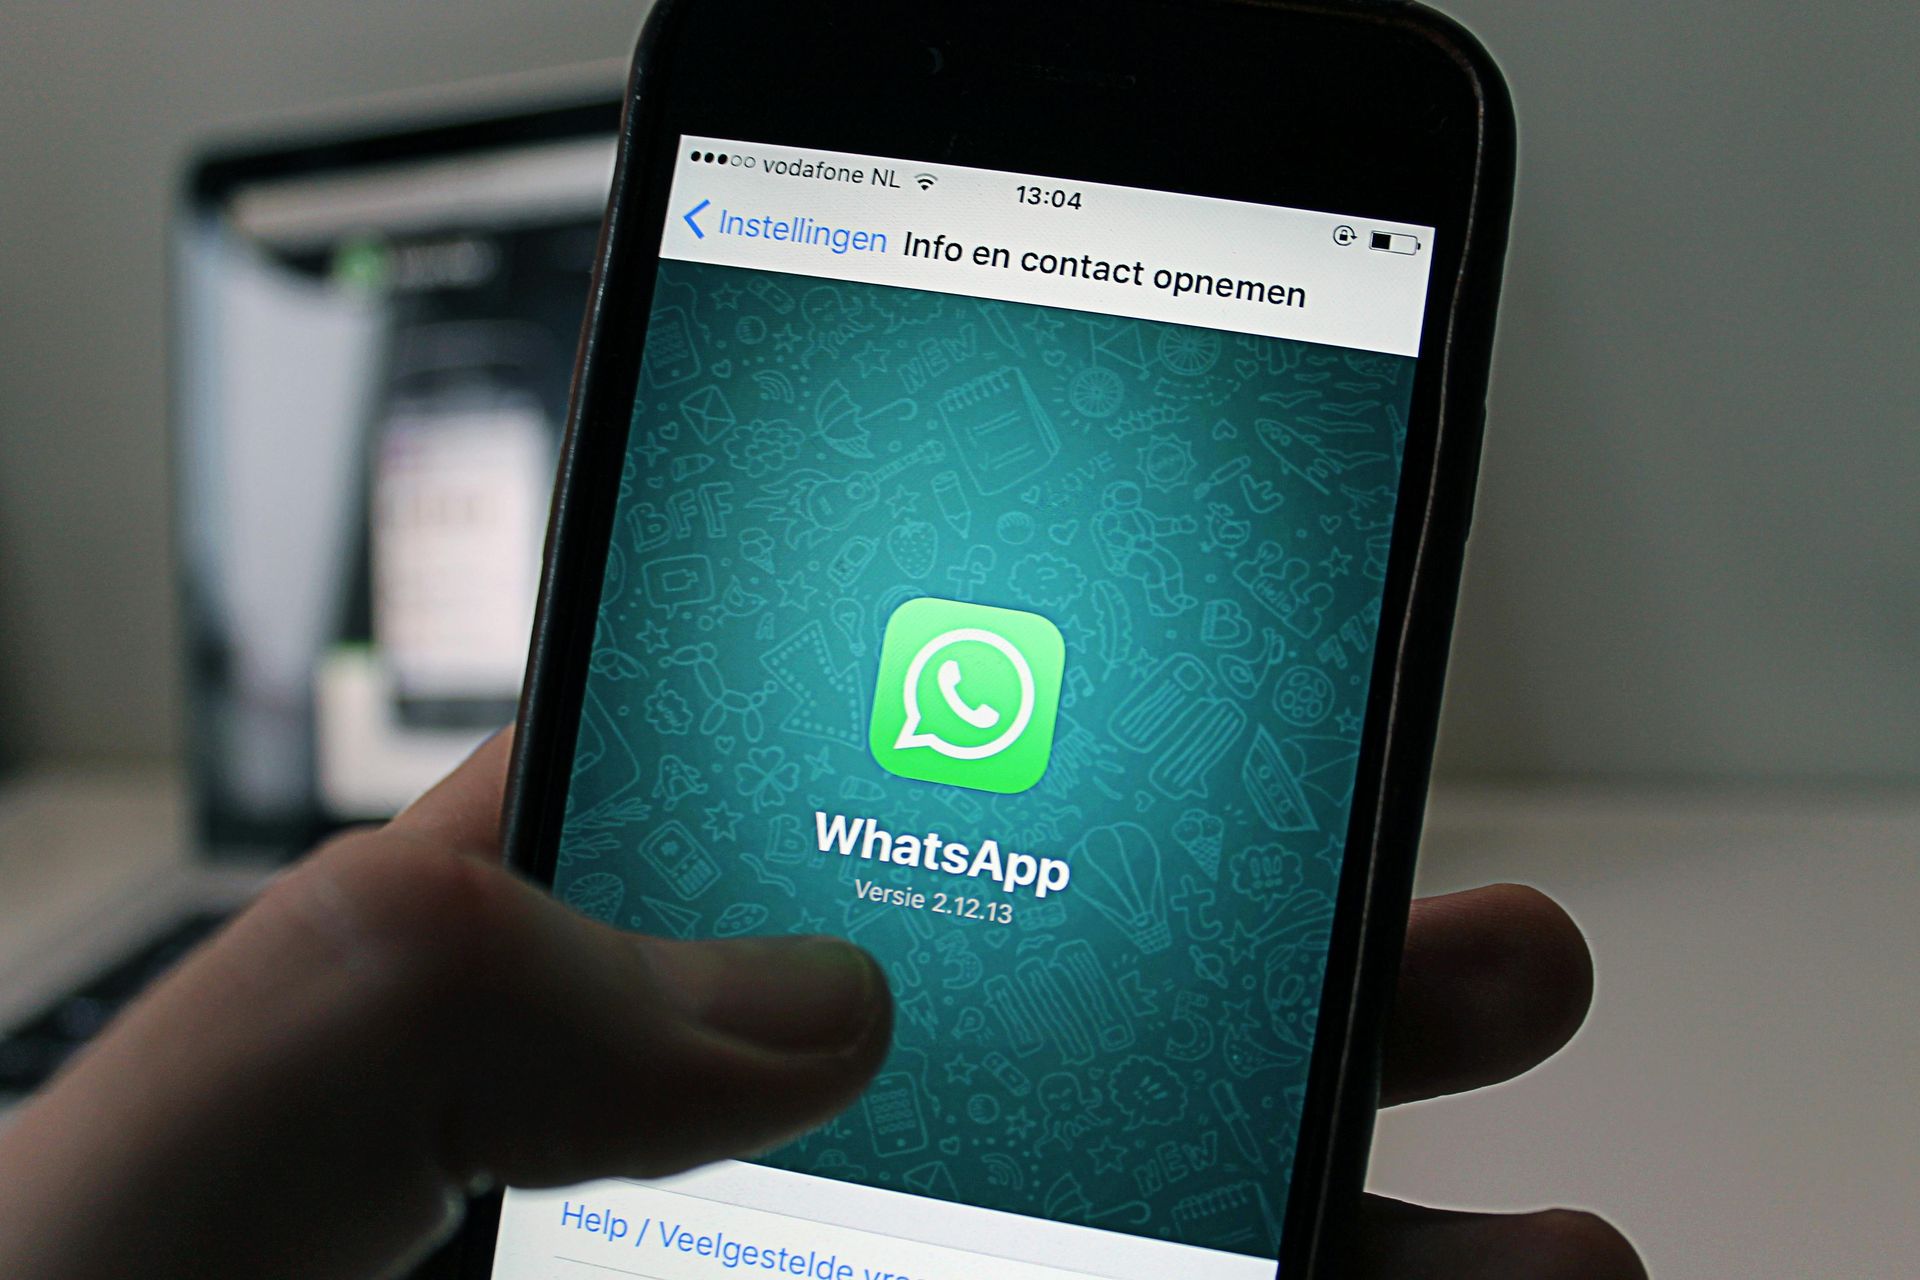 WhatsApp チャット フィルター機能はどのように機能しますか?